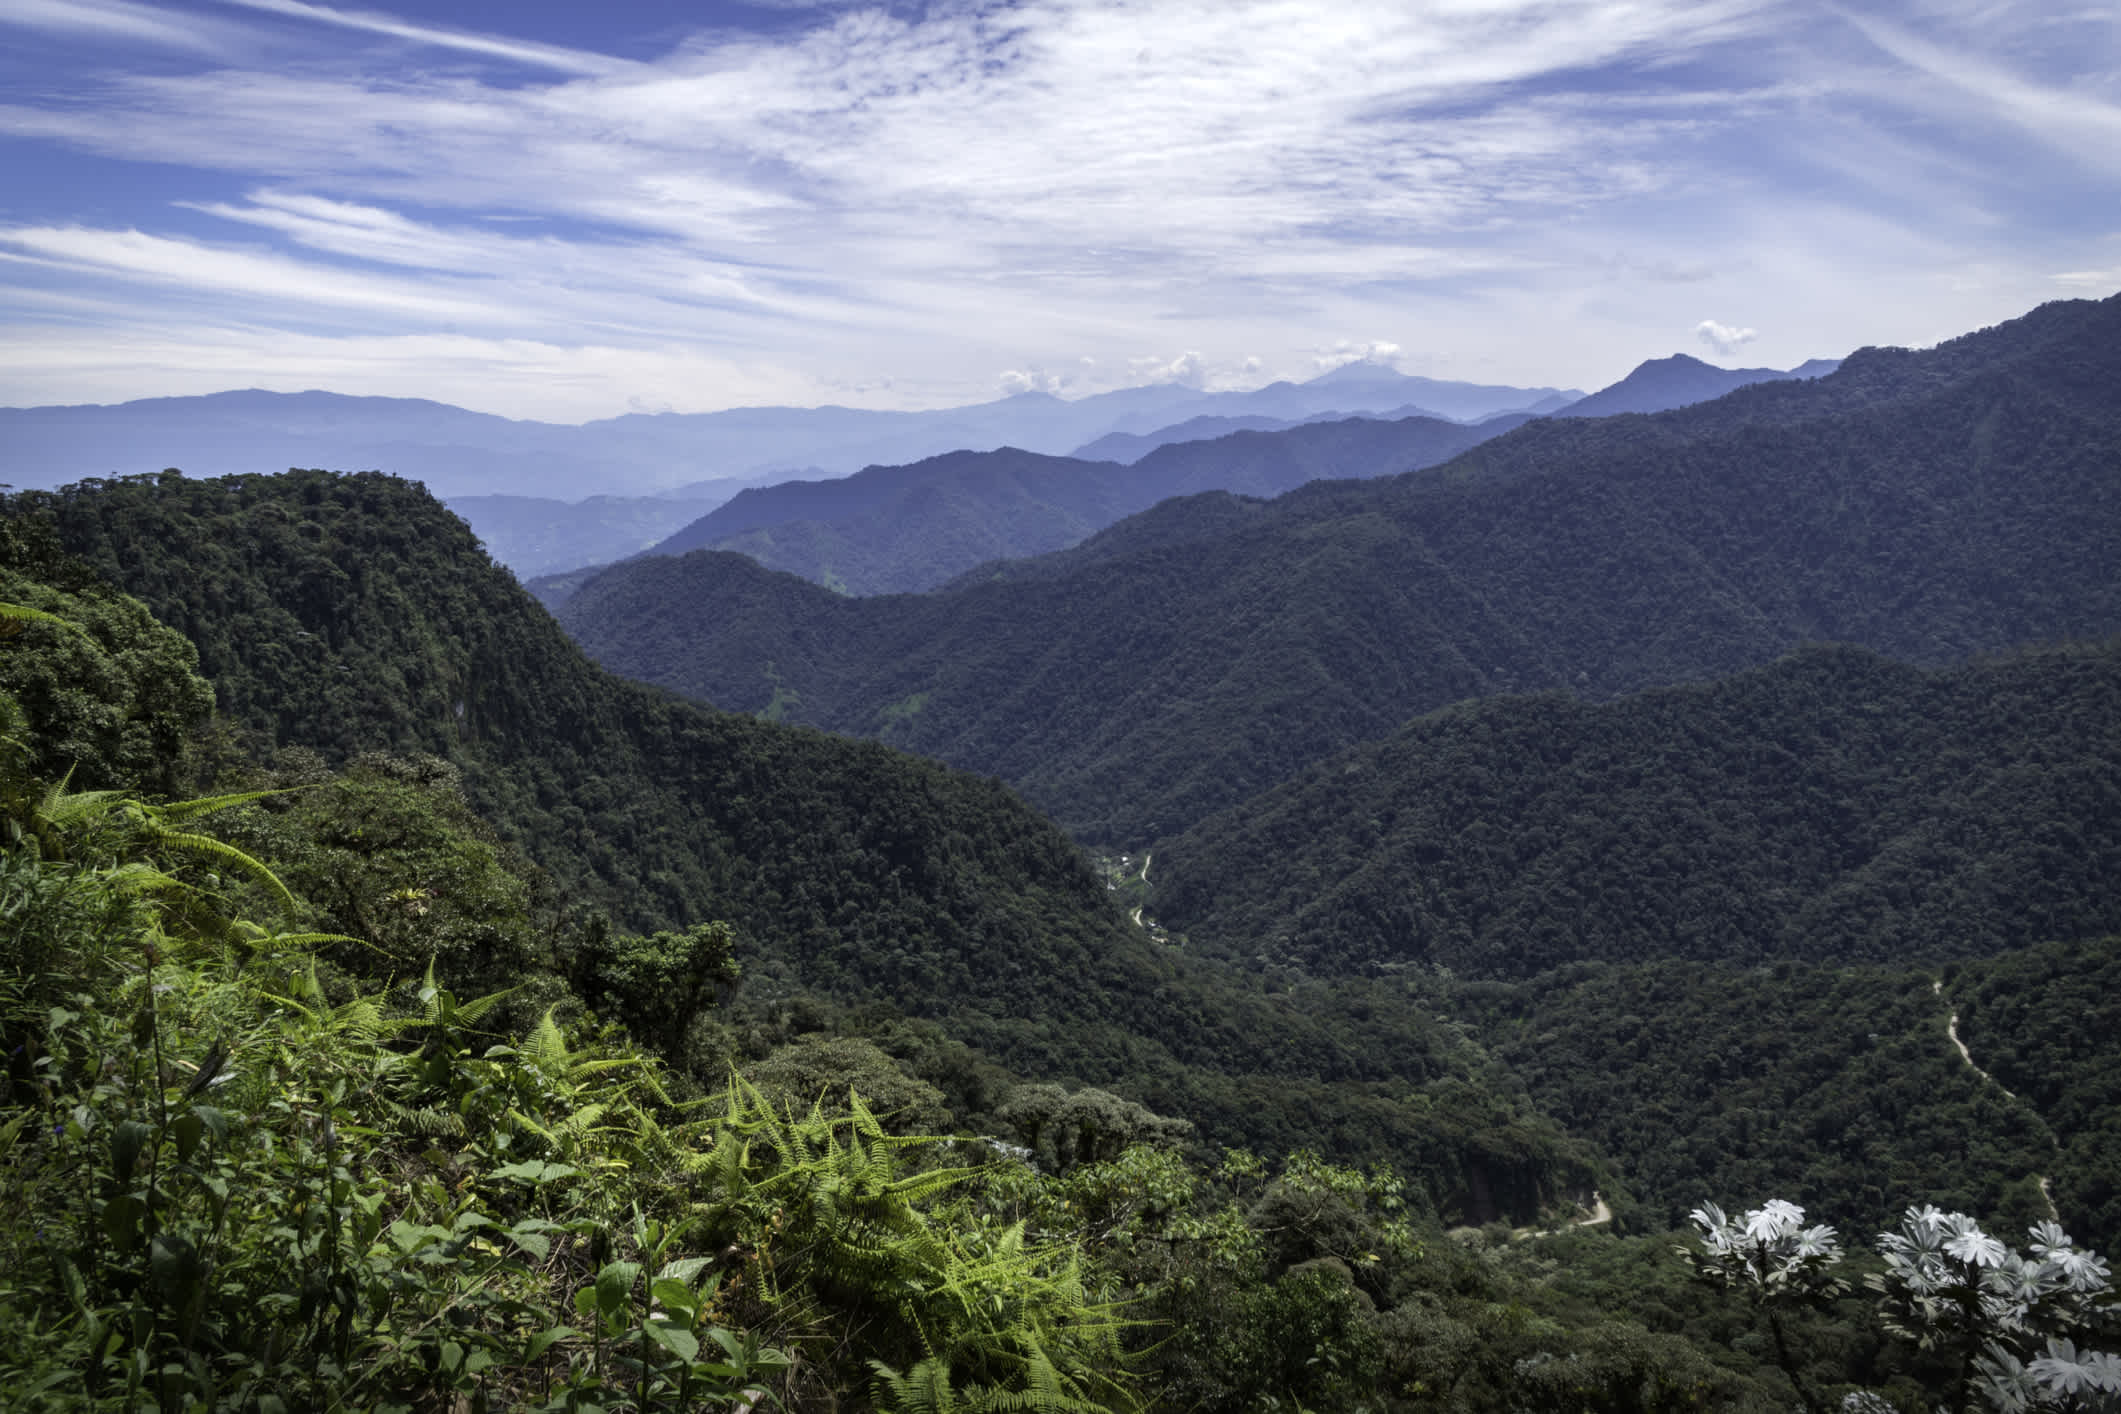 Erstaunlicher Panoramablick auf das Bella Vista Tal. Sie können mehrere Berge, Hügel, wilde Vegetation und den Himmel voller Wolken sehen. Mindo, Ecuador